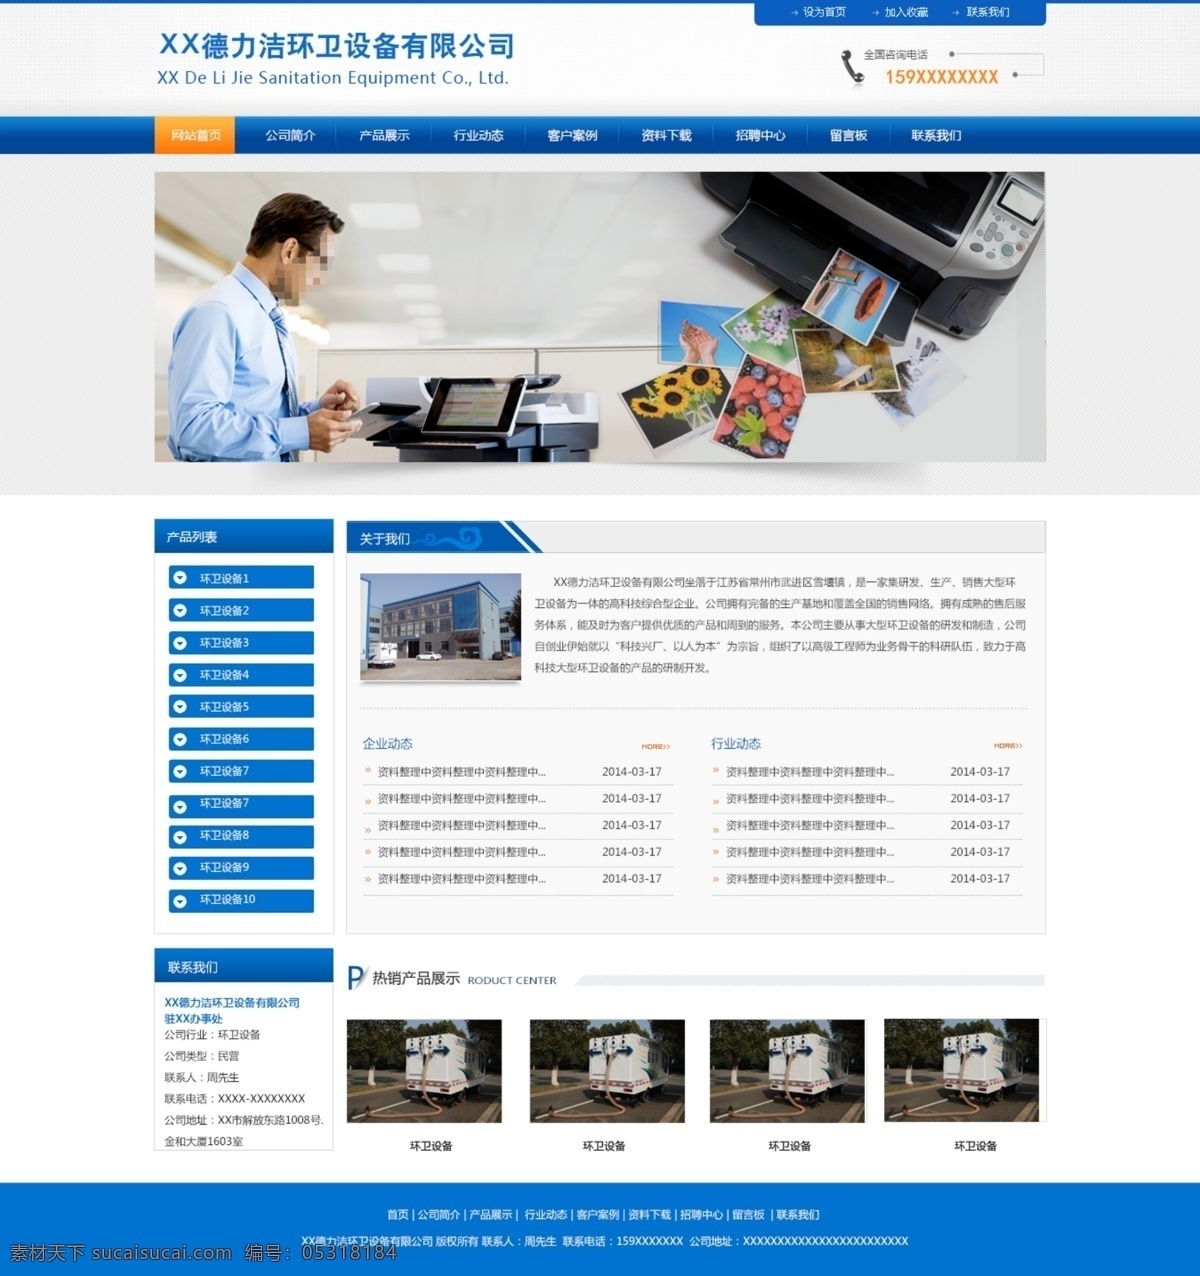 大气模板 蓝色模板 企业模板 网页模板 网站模板 网站 模板 模板下载 源文件 中文模板 整洁模板 网页素材